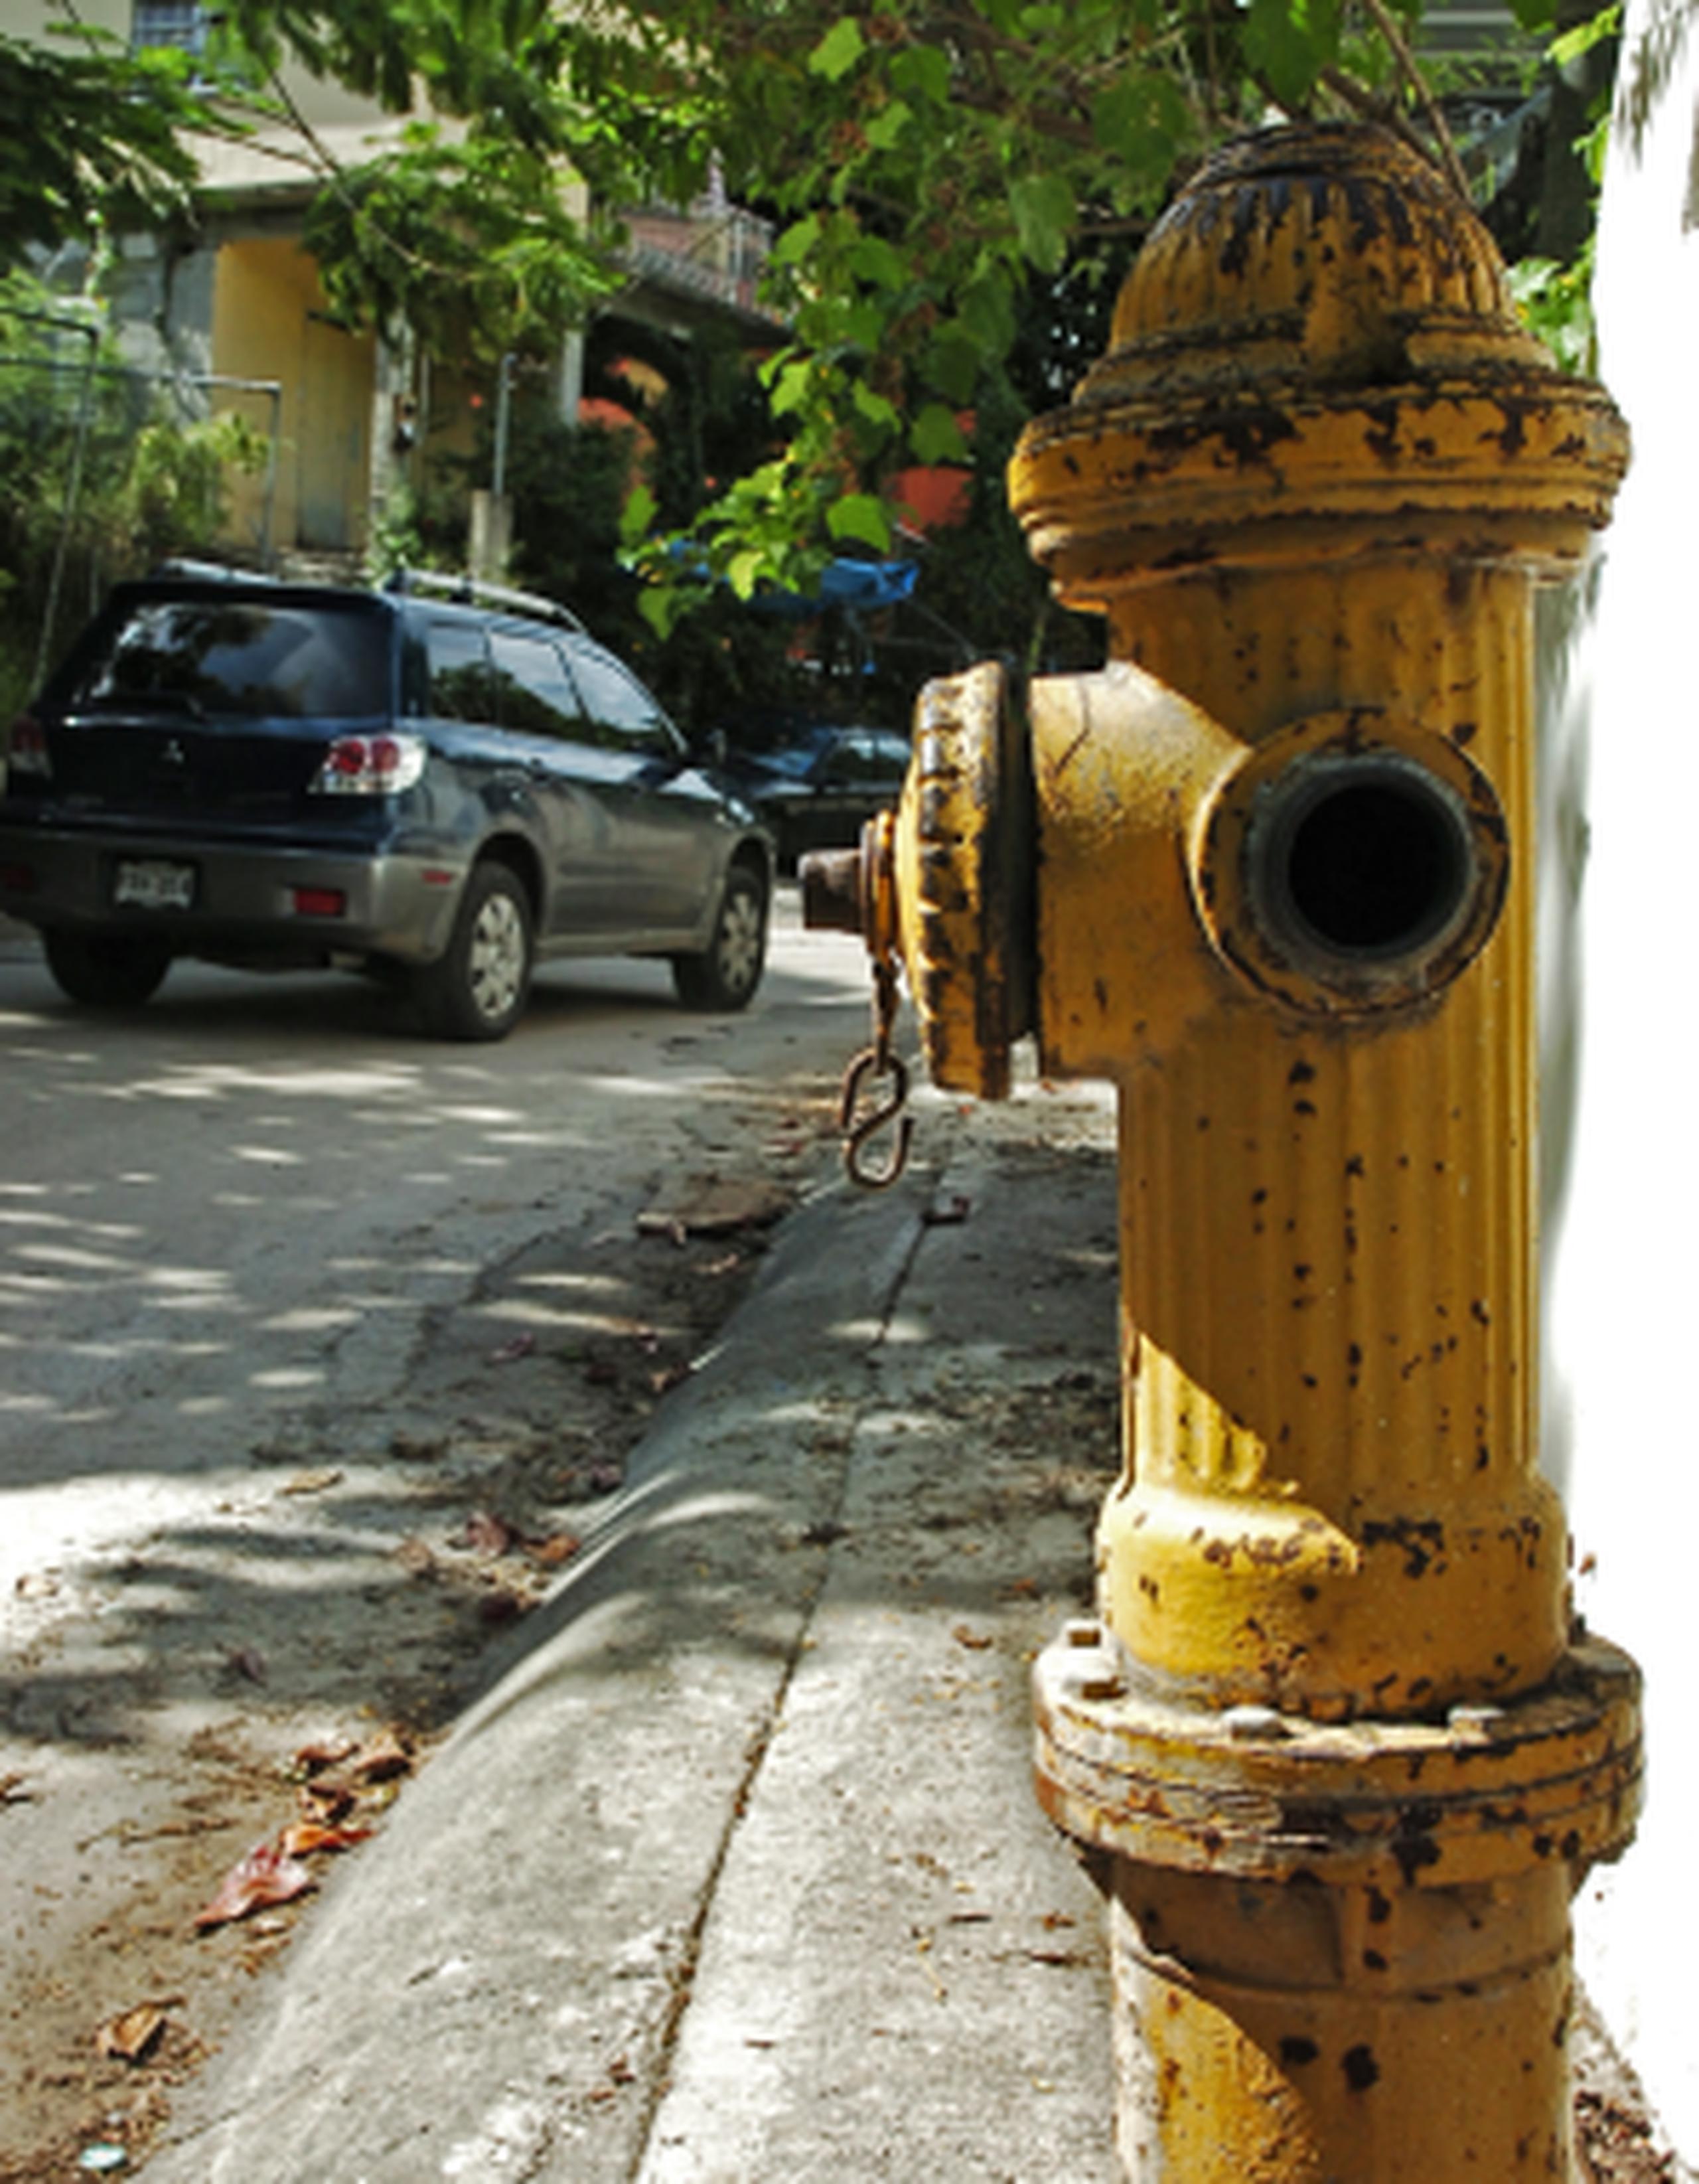 Para reportar situaciones de vandalismo o mal uso de los hidrantes, las personas se pueden comunicar de forma anónima al 1-888-667-6230 o escribir a confidencias@acueductospr.com. (Archivo)